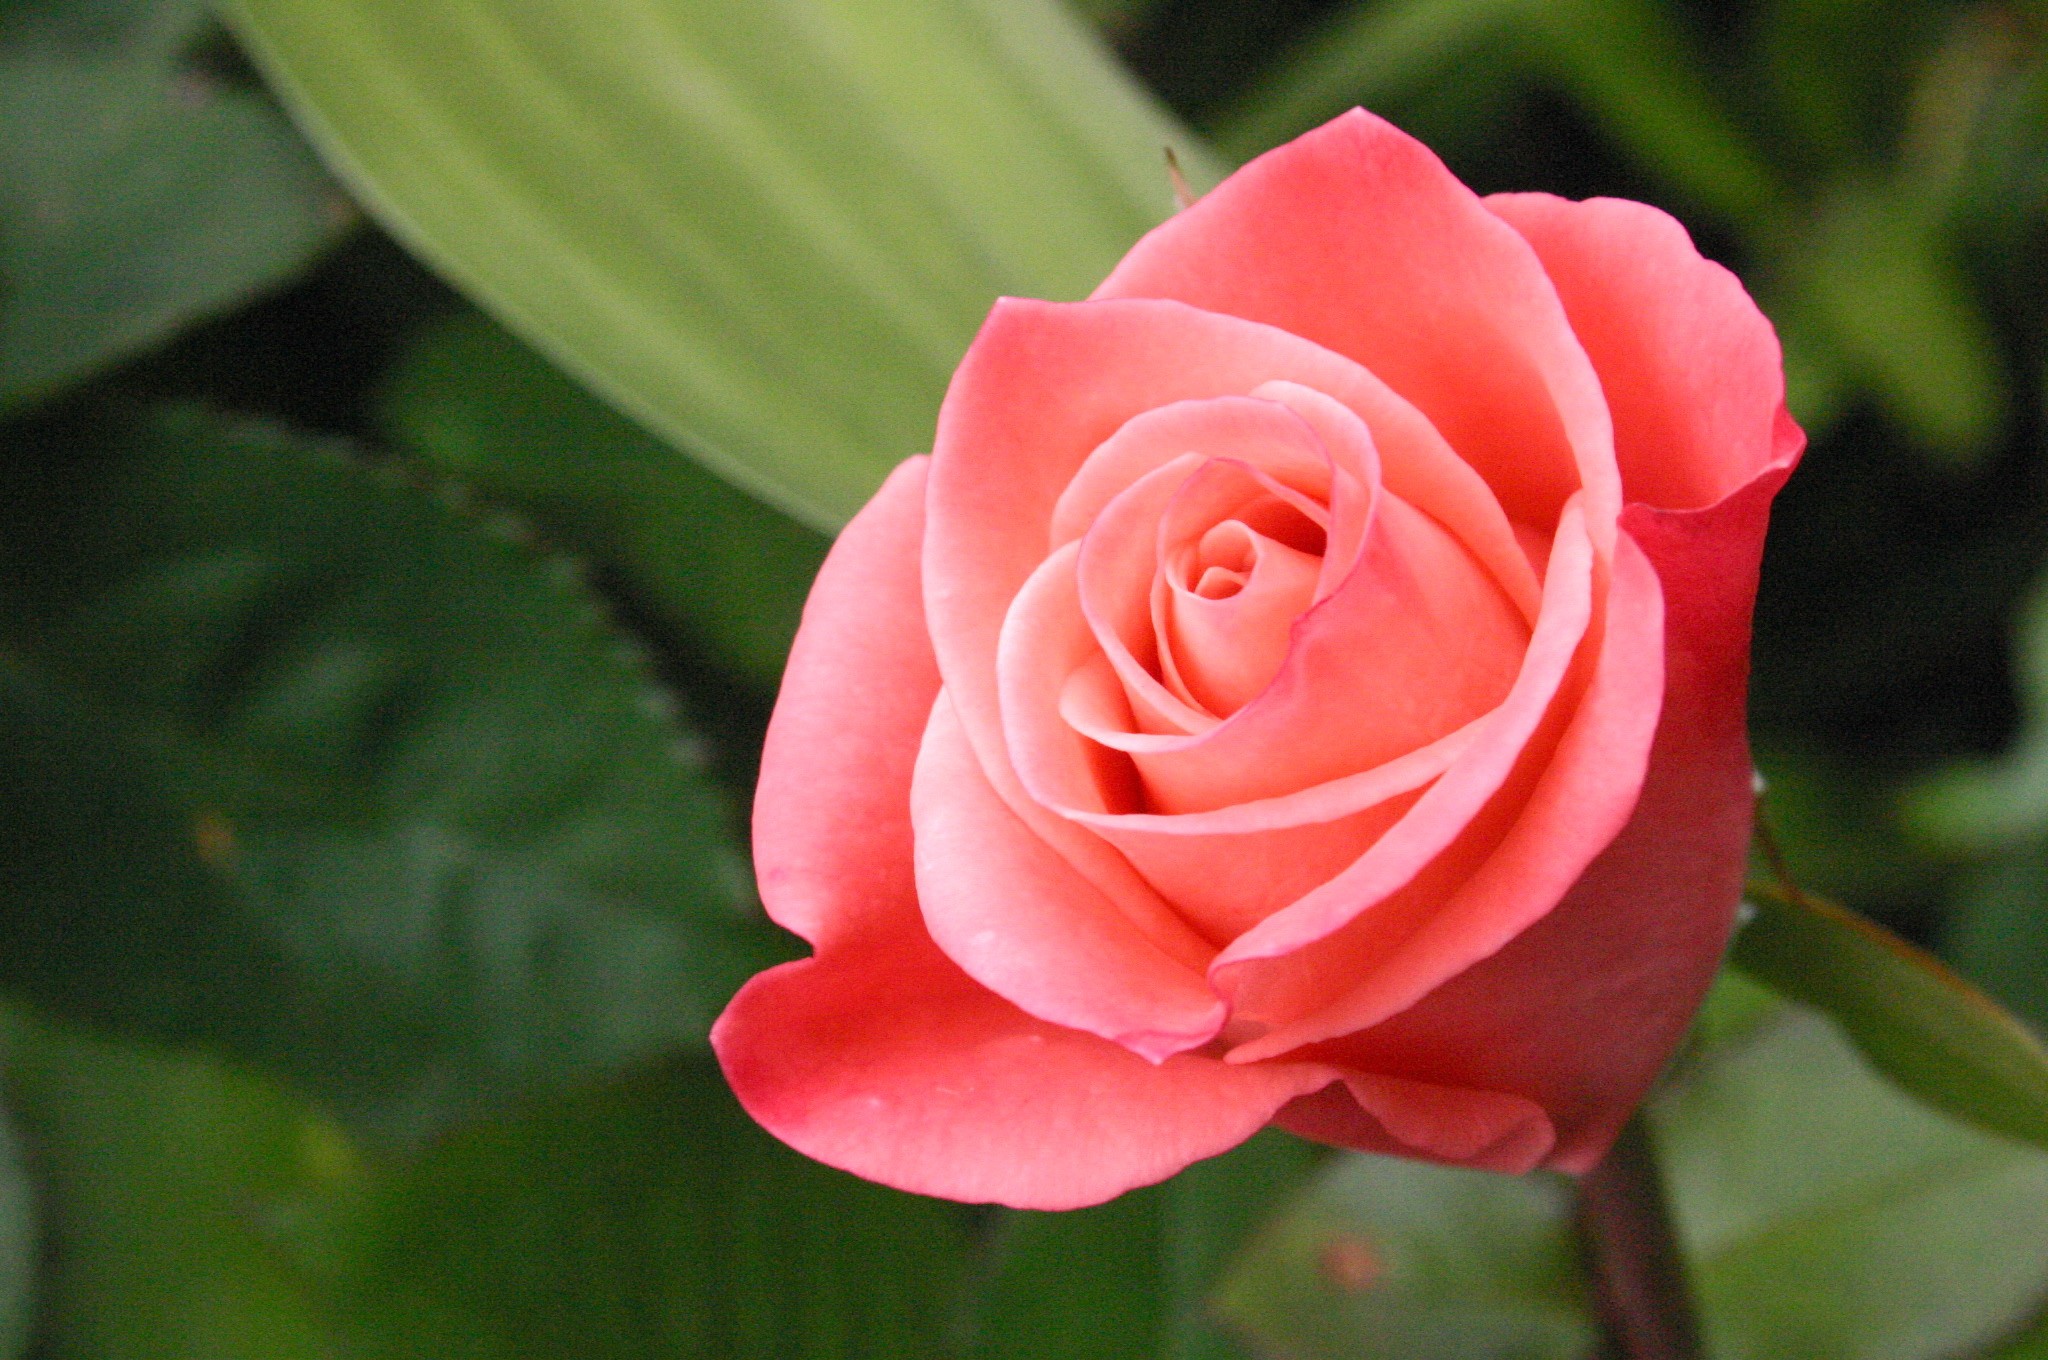 http://cdn.oboi7.com/7a3ca8fc64083354baf055805d1c3c32897d75a4/cvety-rozy-rozovye-cvety-rozovye-rozy.jpg